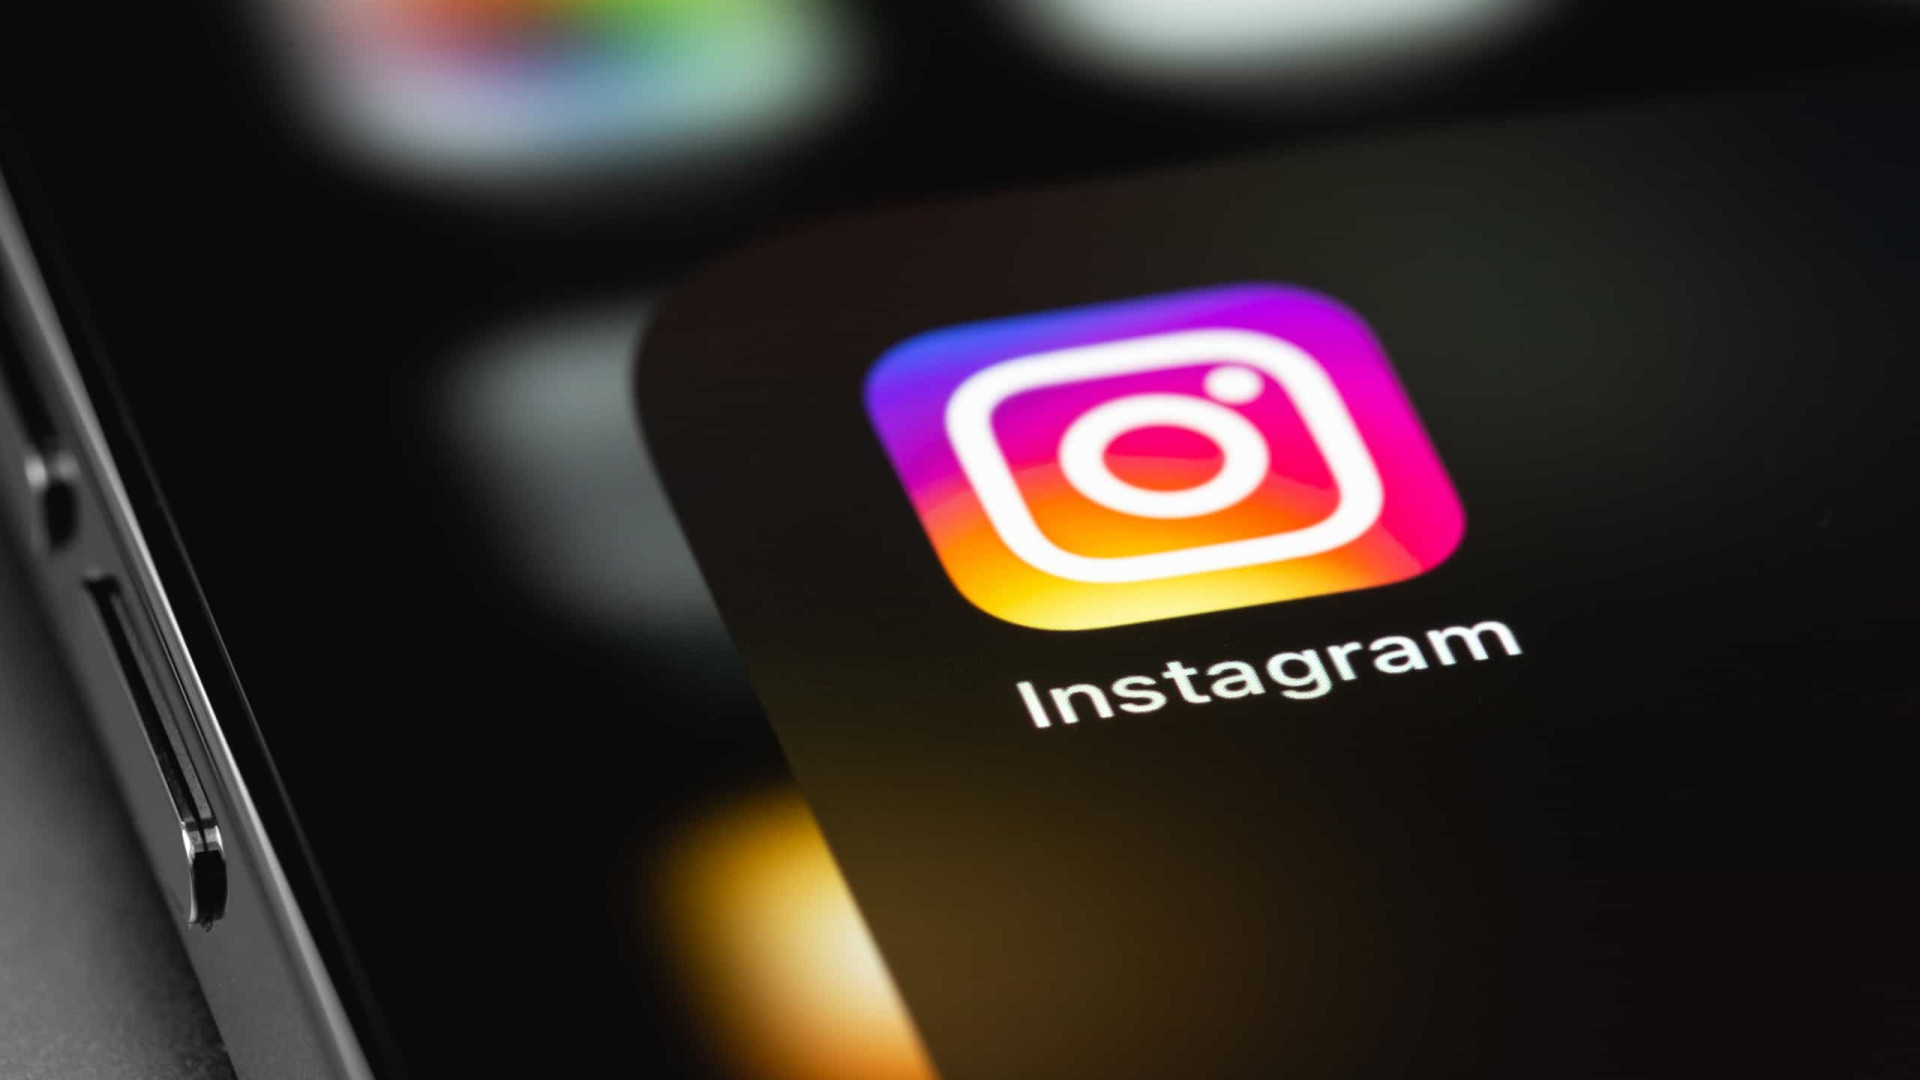 Das polaroids às fotos ocultas; as novidades dos 'Stories' do Instagram